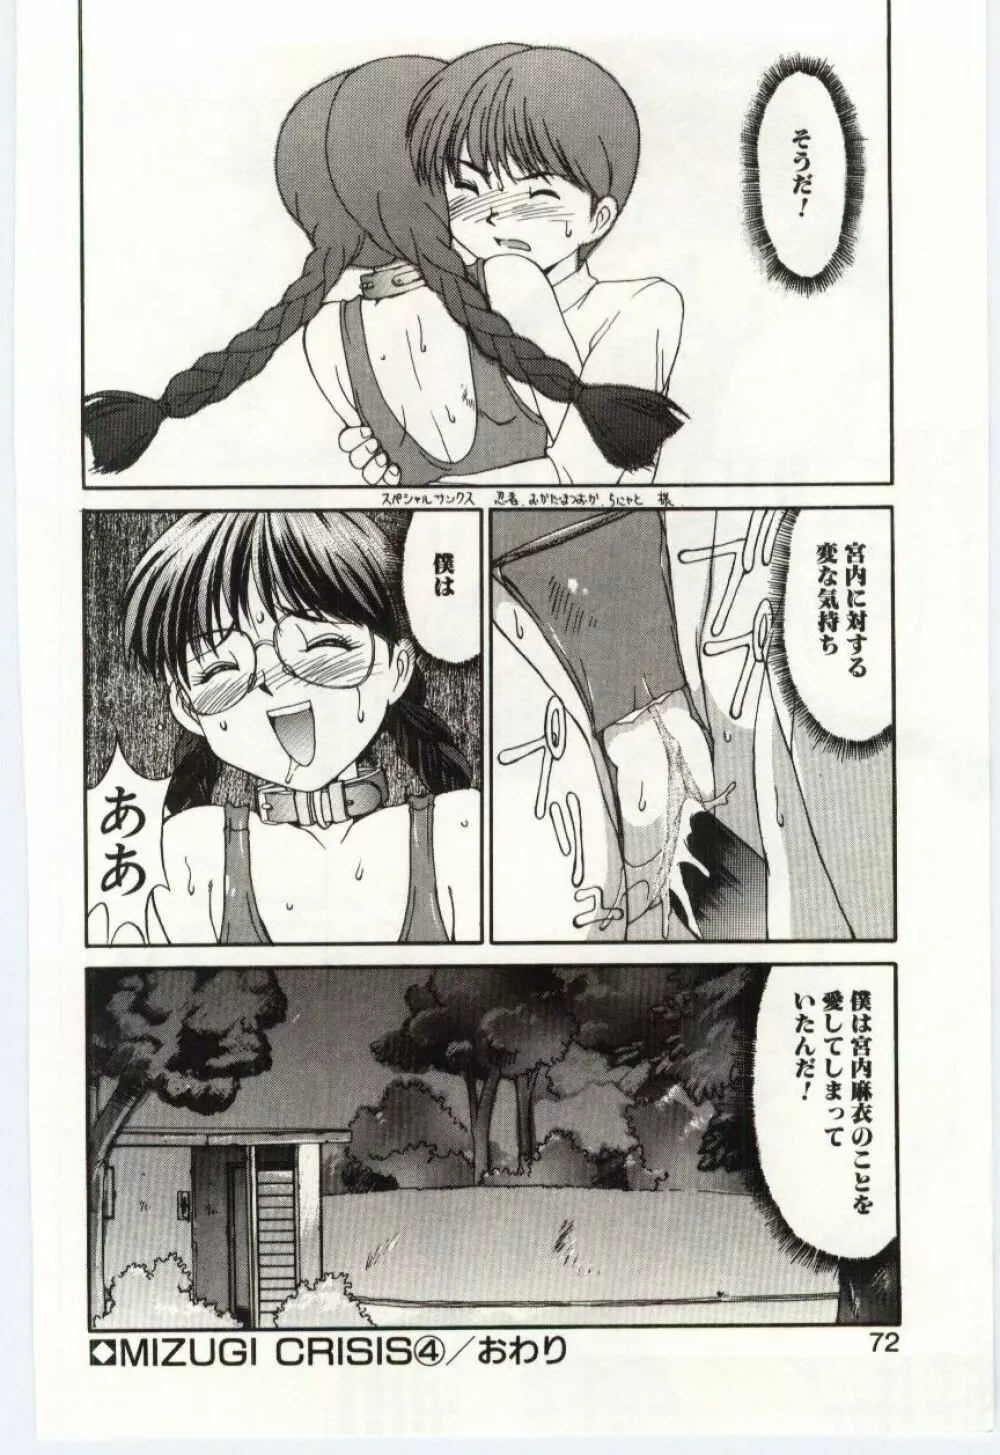 Mizugi Crisis part 1 - JP Page.71